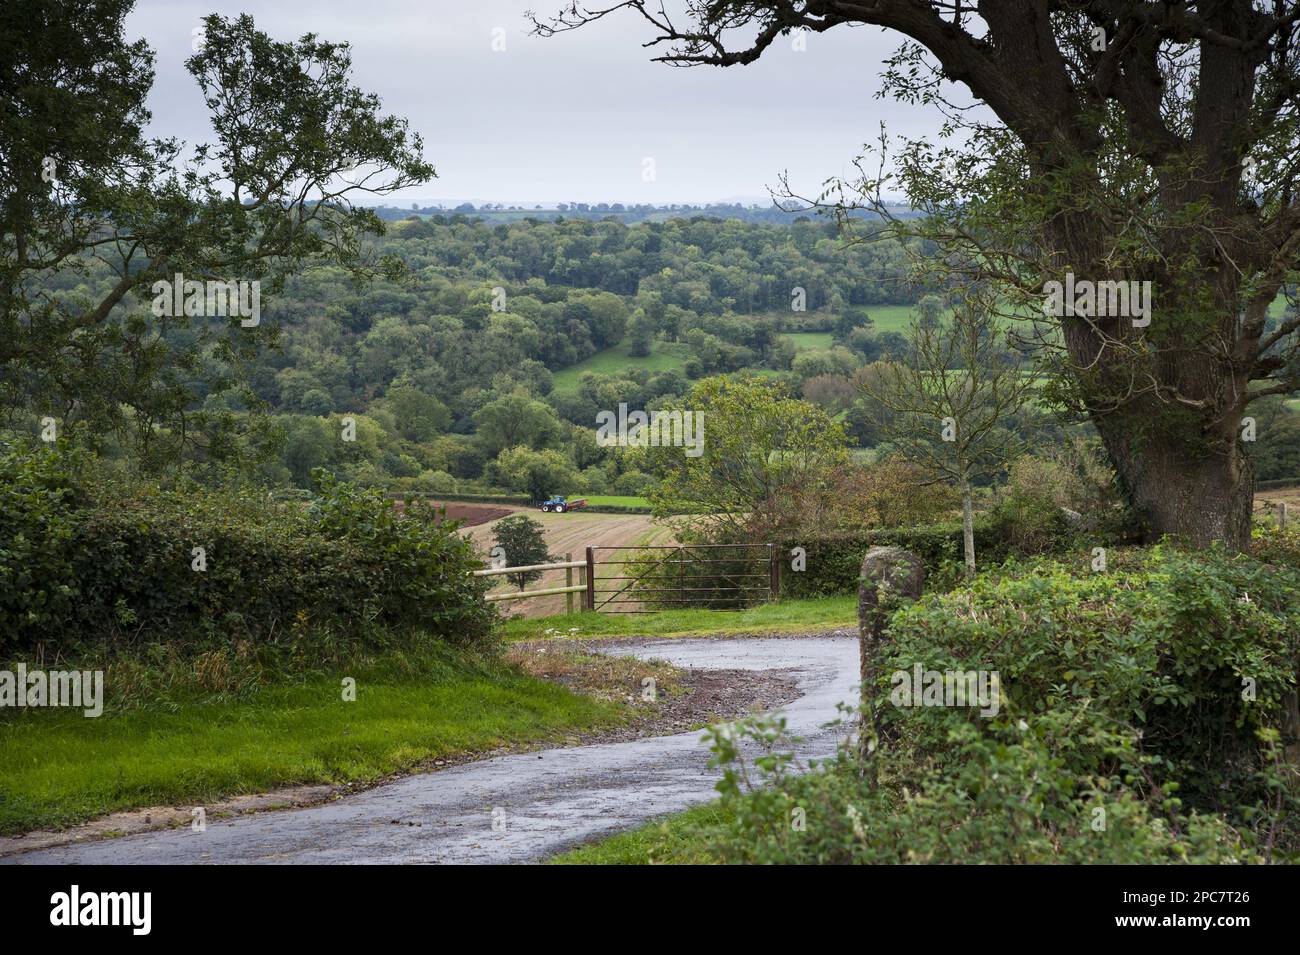 Vista della corsia di campagna, aratura del trattore sul campo e terreno boschivo su una collina in lontananza, Shepton Mallet, Somerset, Inghilterra, Regno Unito Foto Stock